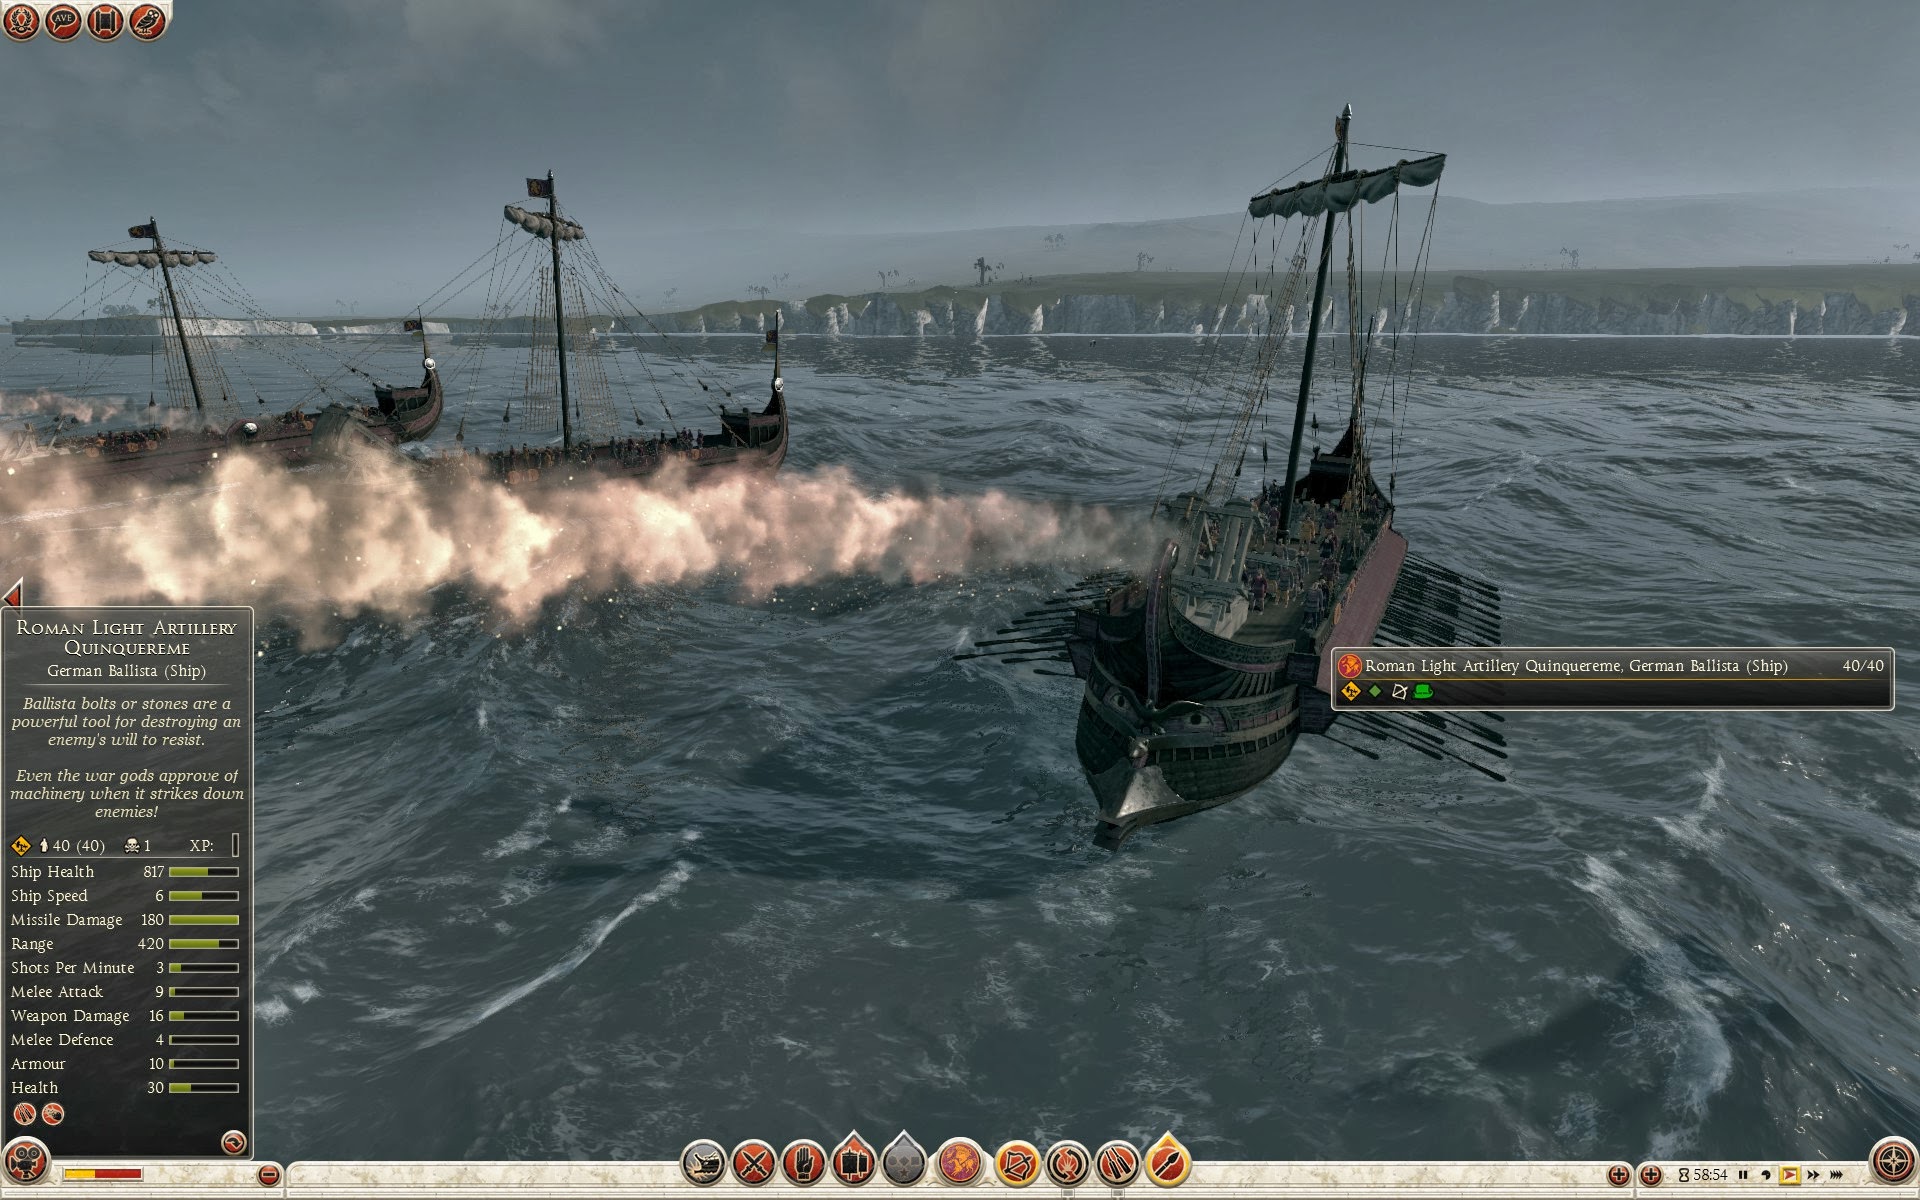 Quinquereme d’artiglieria leggera romana - Balista germanica (nave)